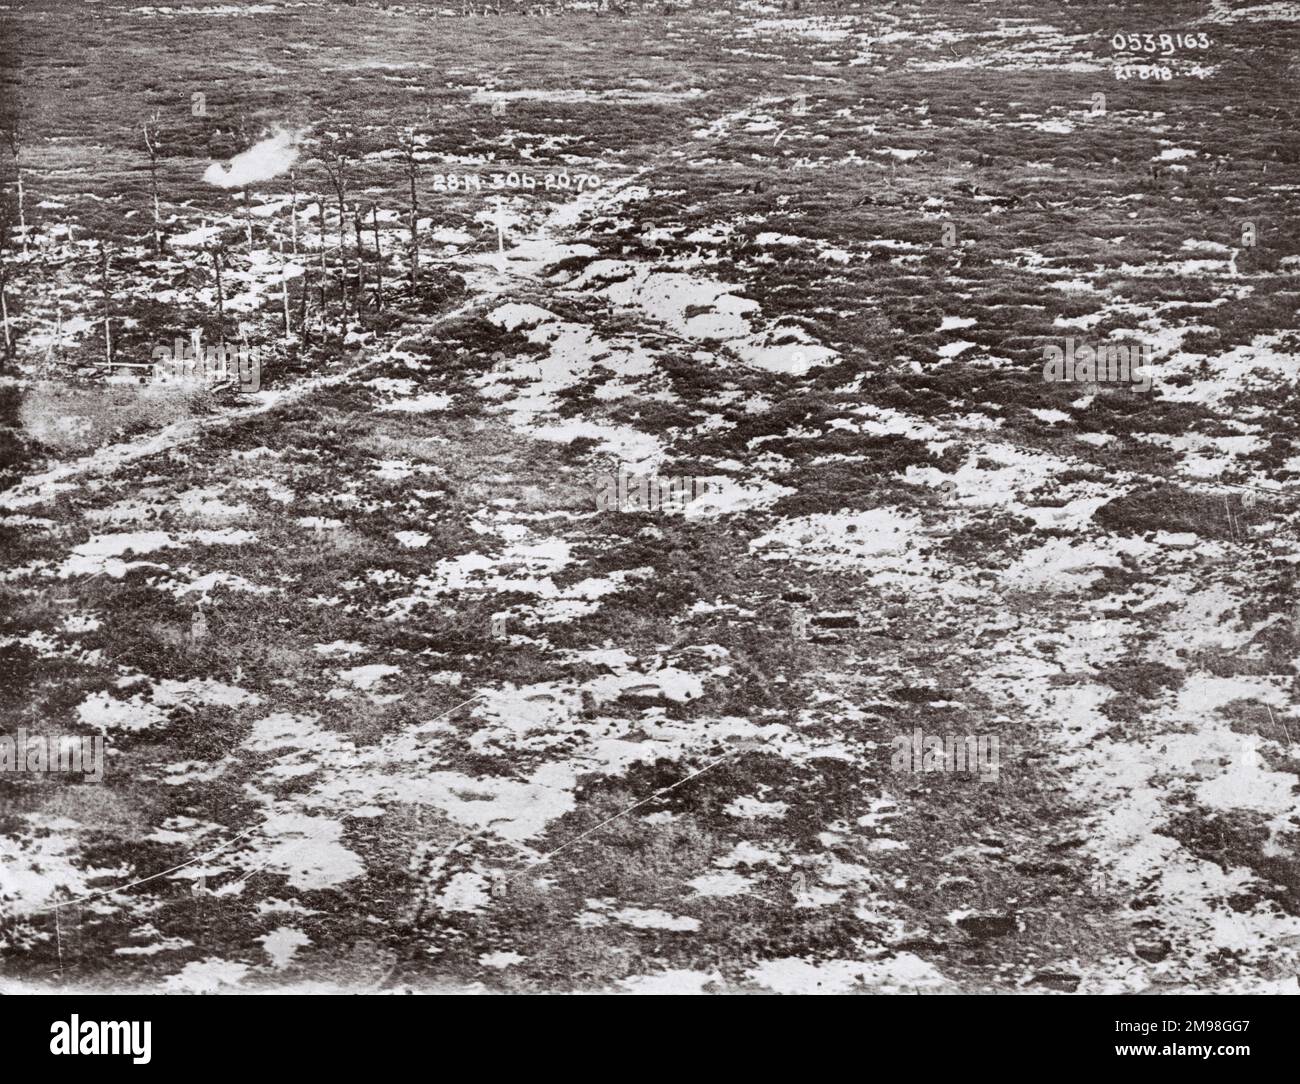 Luftaufnahme eines Muschelgebietes bei Bailleul, Nord, Nordfrankreich, am 21. August 1918 nach dem deutschen Vormarsch. Oben links ist eine berstende Schale sichtbar. Stockfoto